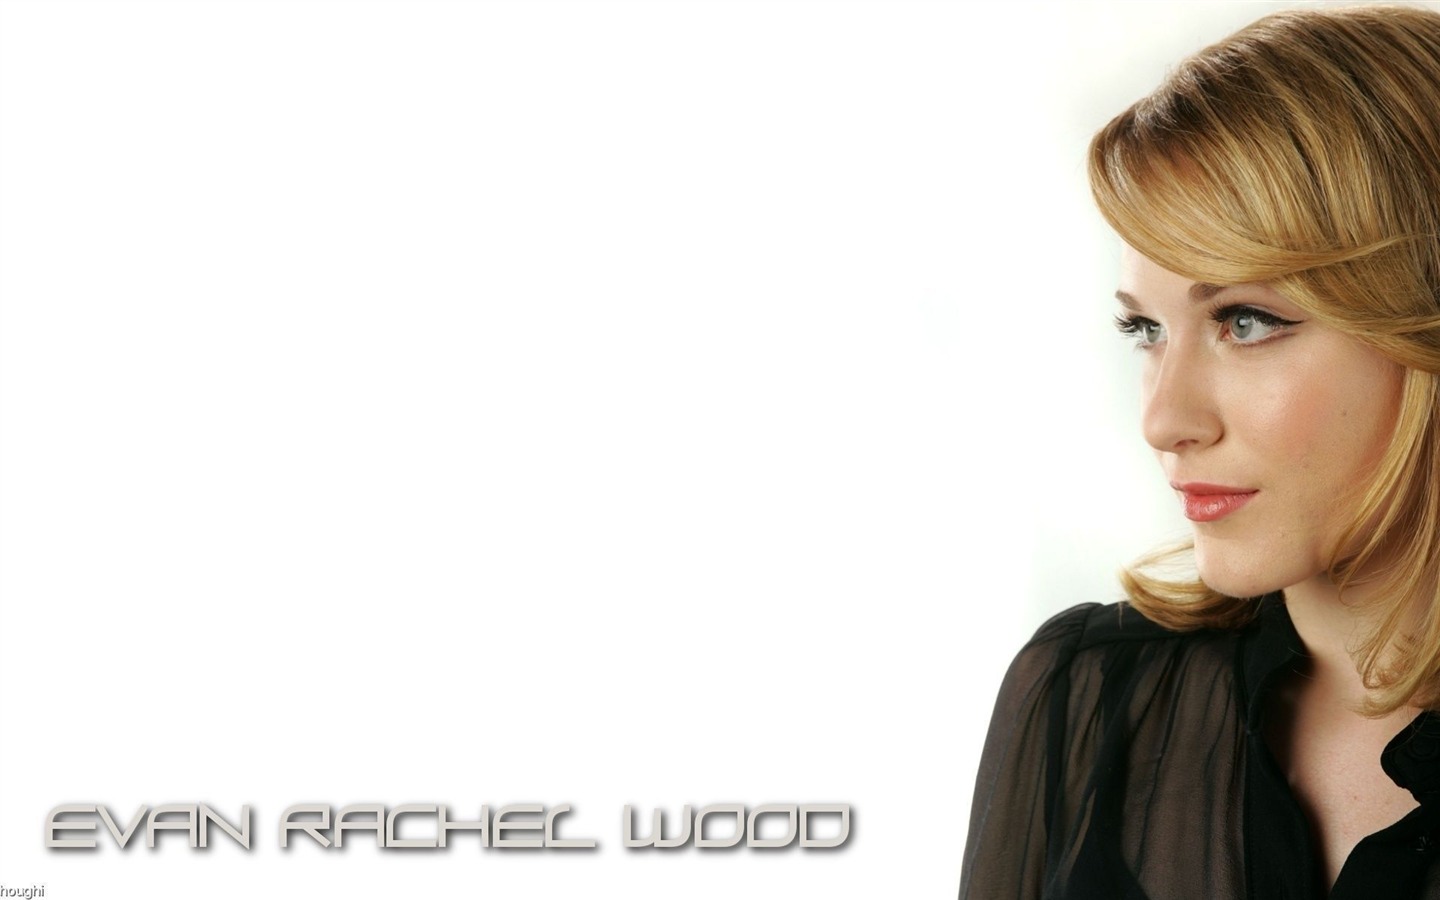 Evan Rachel Wood #002 - 1440x900 Wallpapers Pictures Photos Images